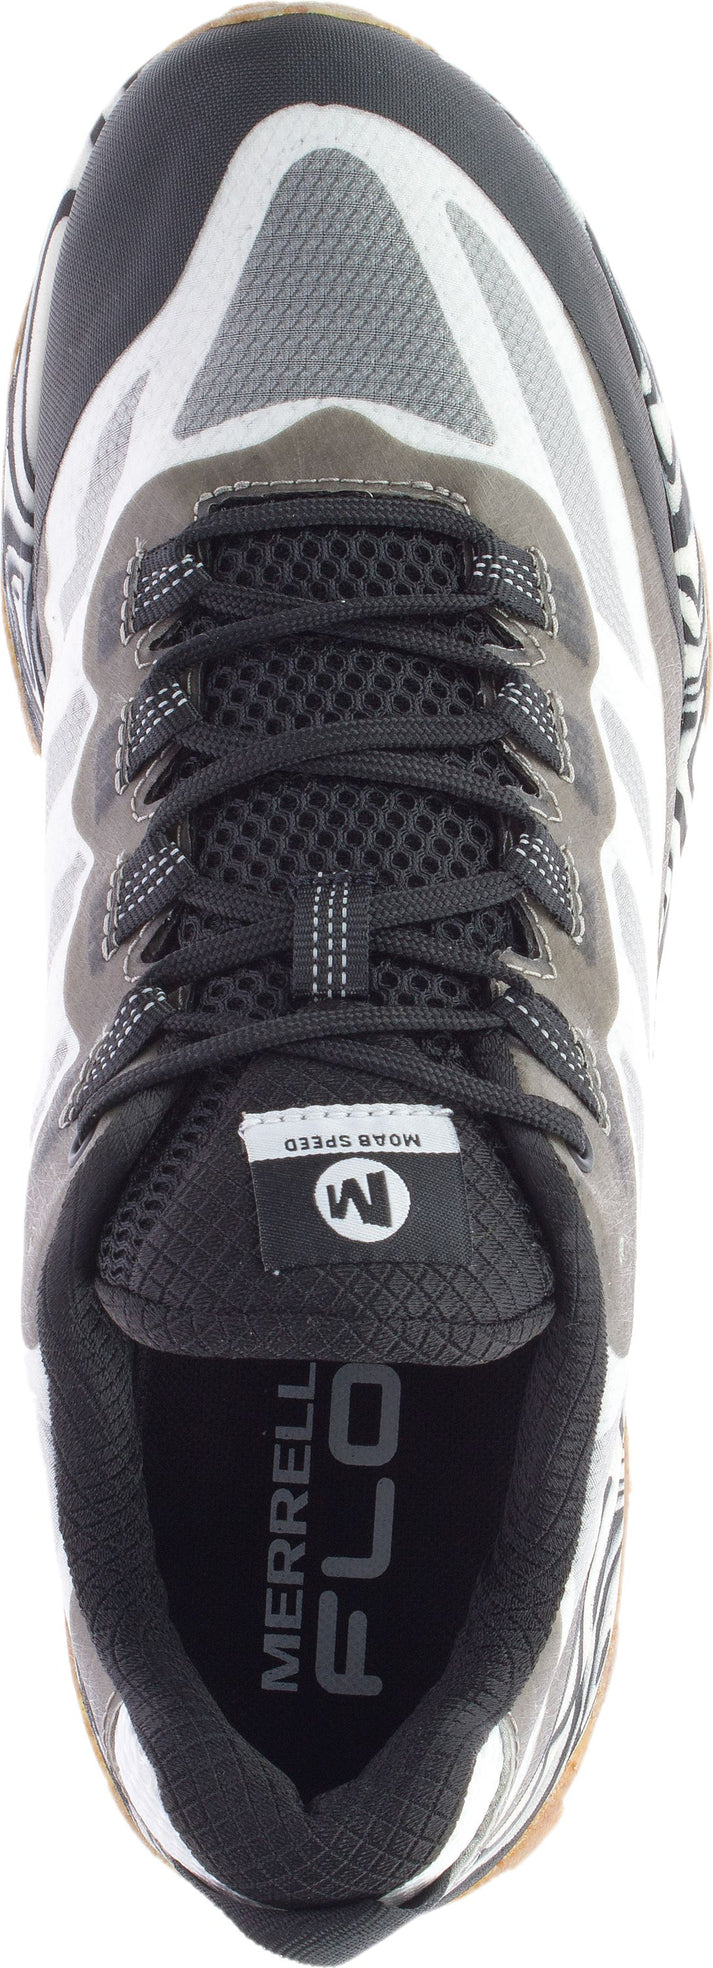 Merrell Shoes Moab Speed Solution Dye Black White